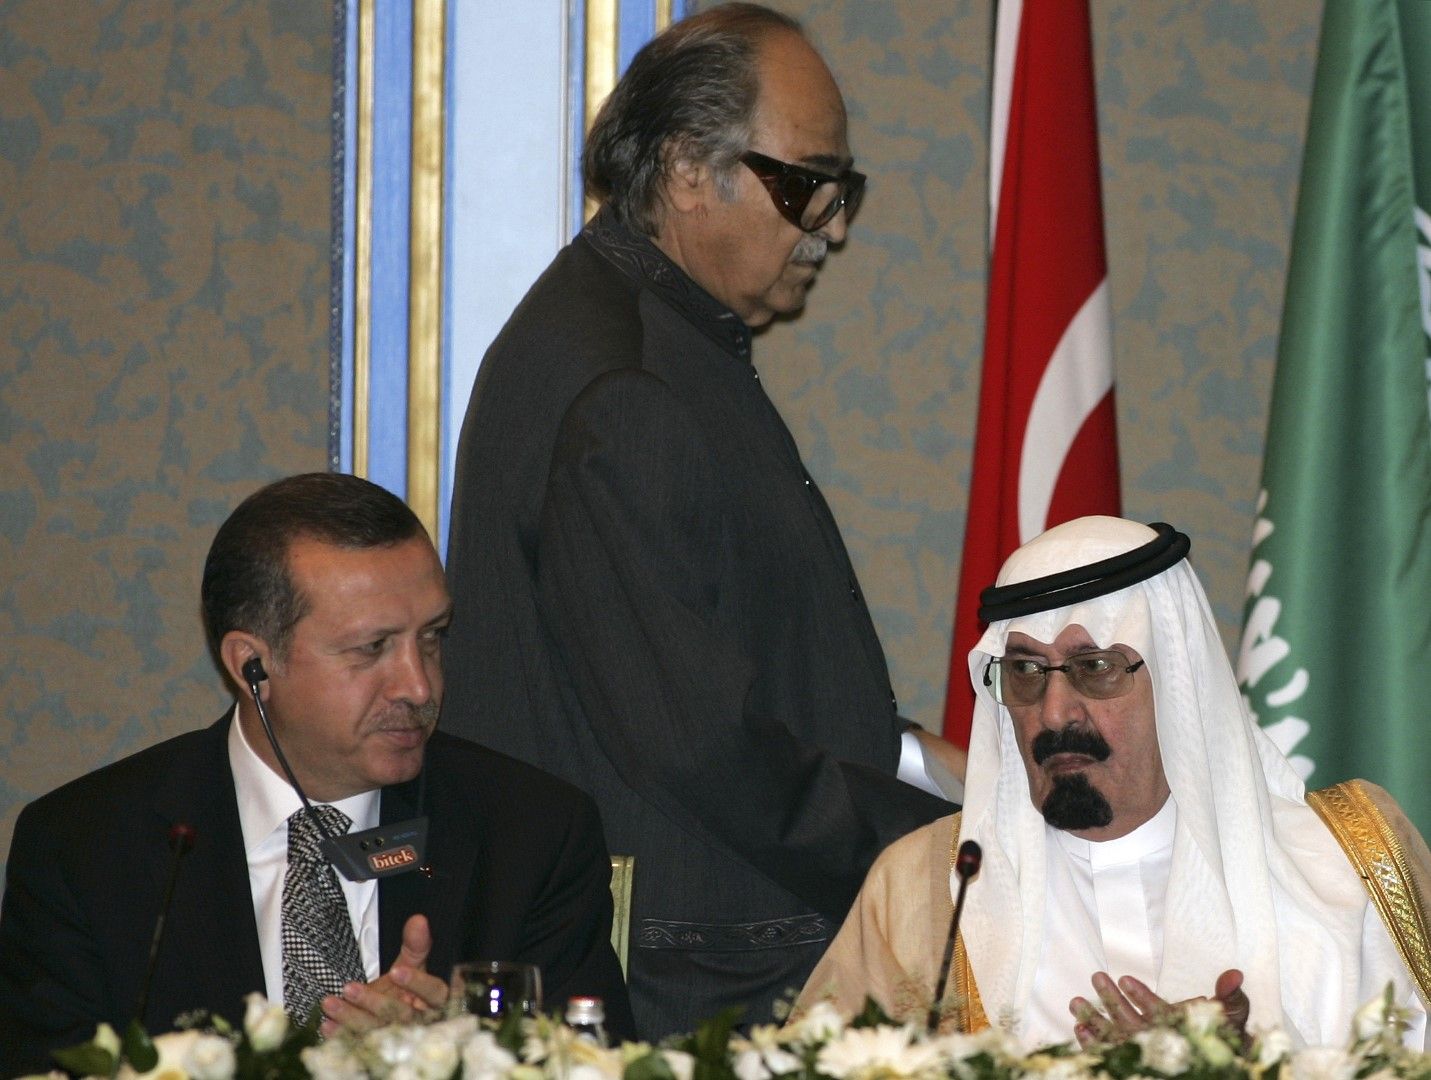 2006 г. Президентът на Турция Реджеп Тайип Ердоган (вляво) и кралят на Саудитска Арабия Абдулла (вдясно). Изправен в средата е саудитският бизнесмен милиардер Салех Абдула Камел